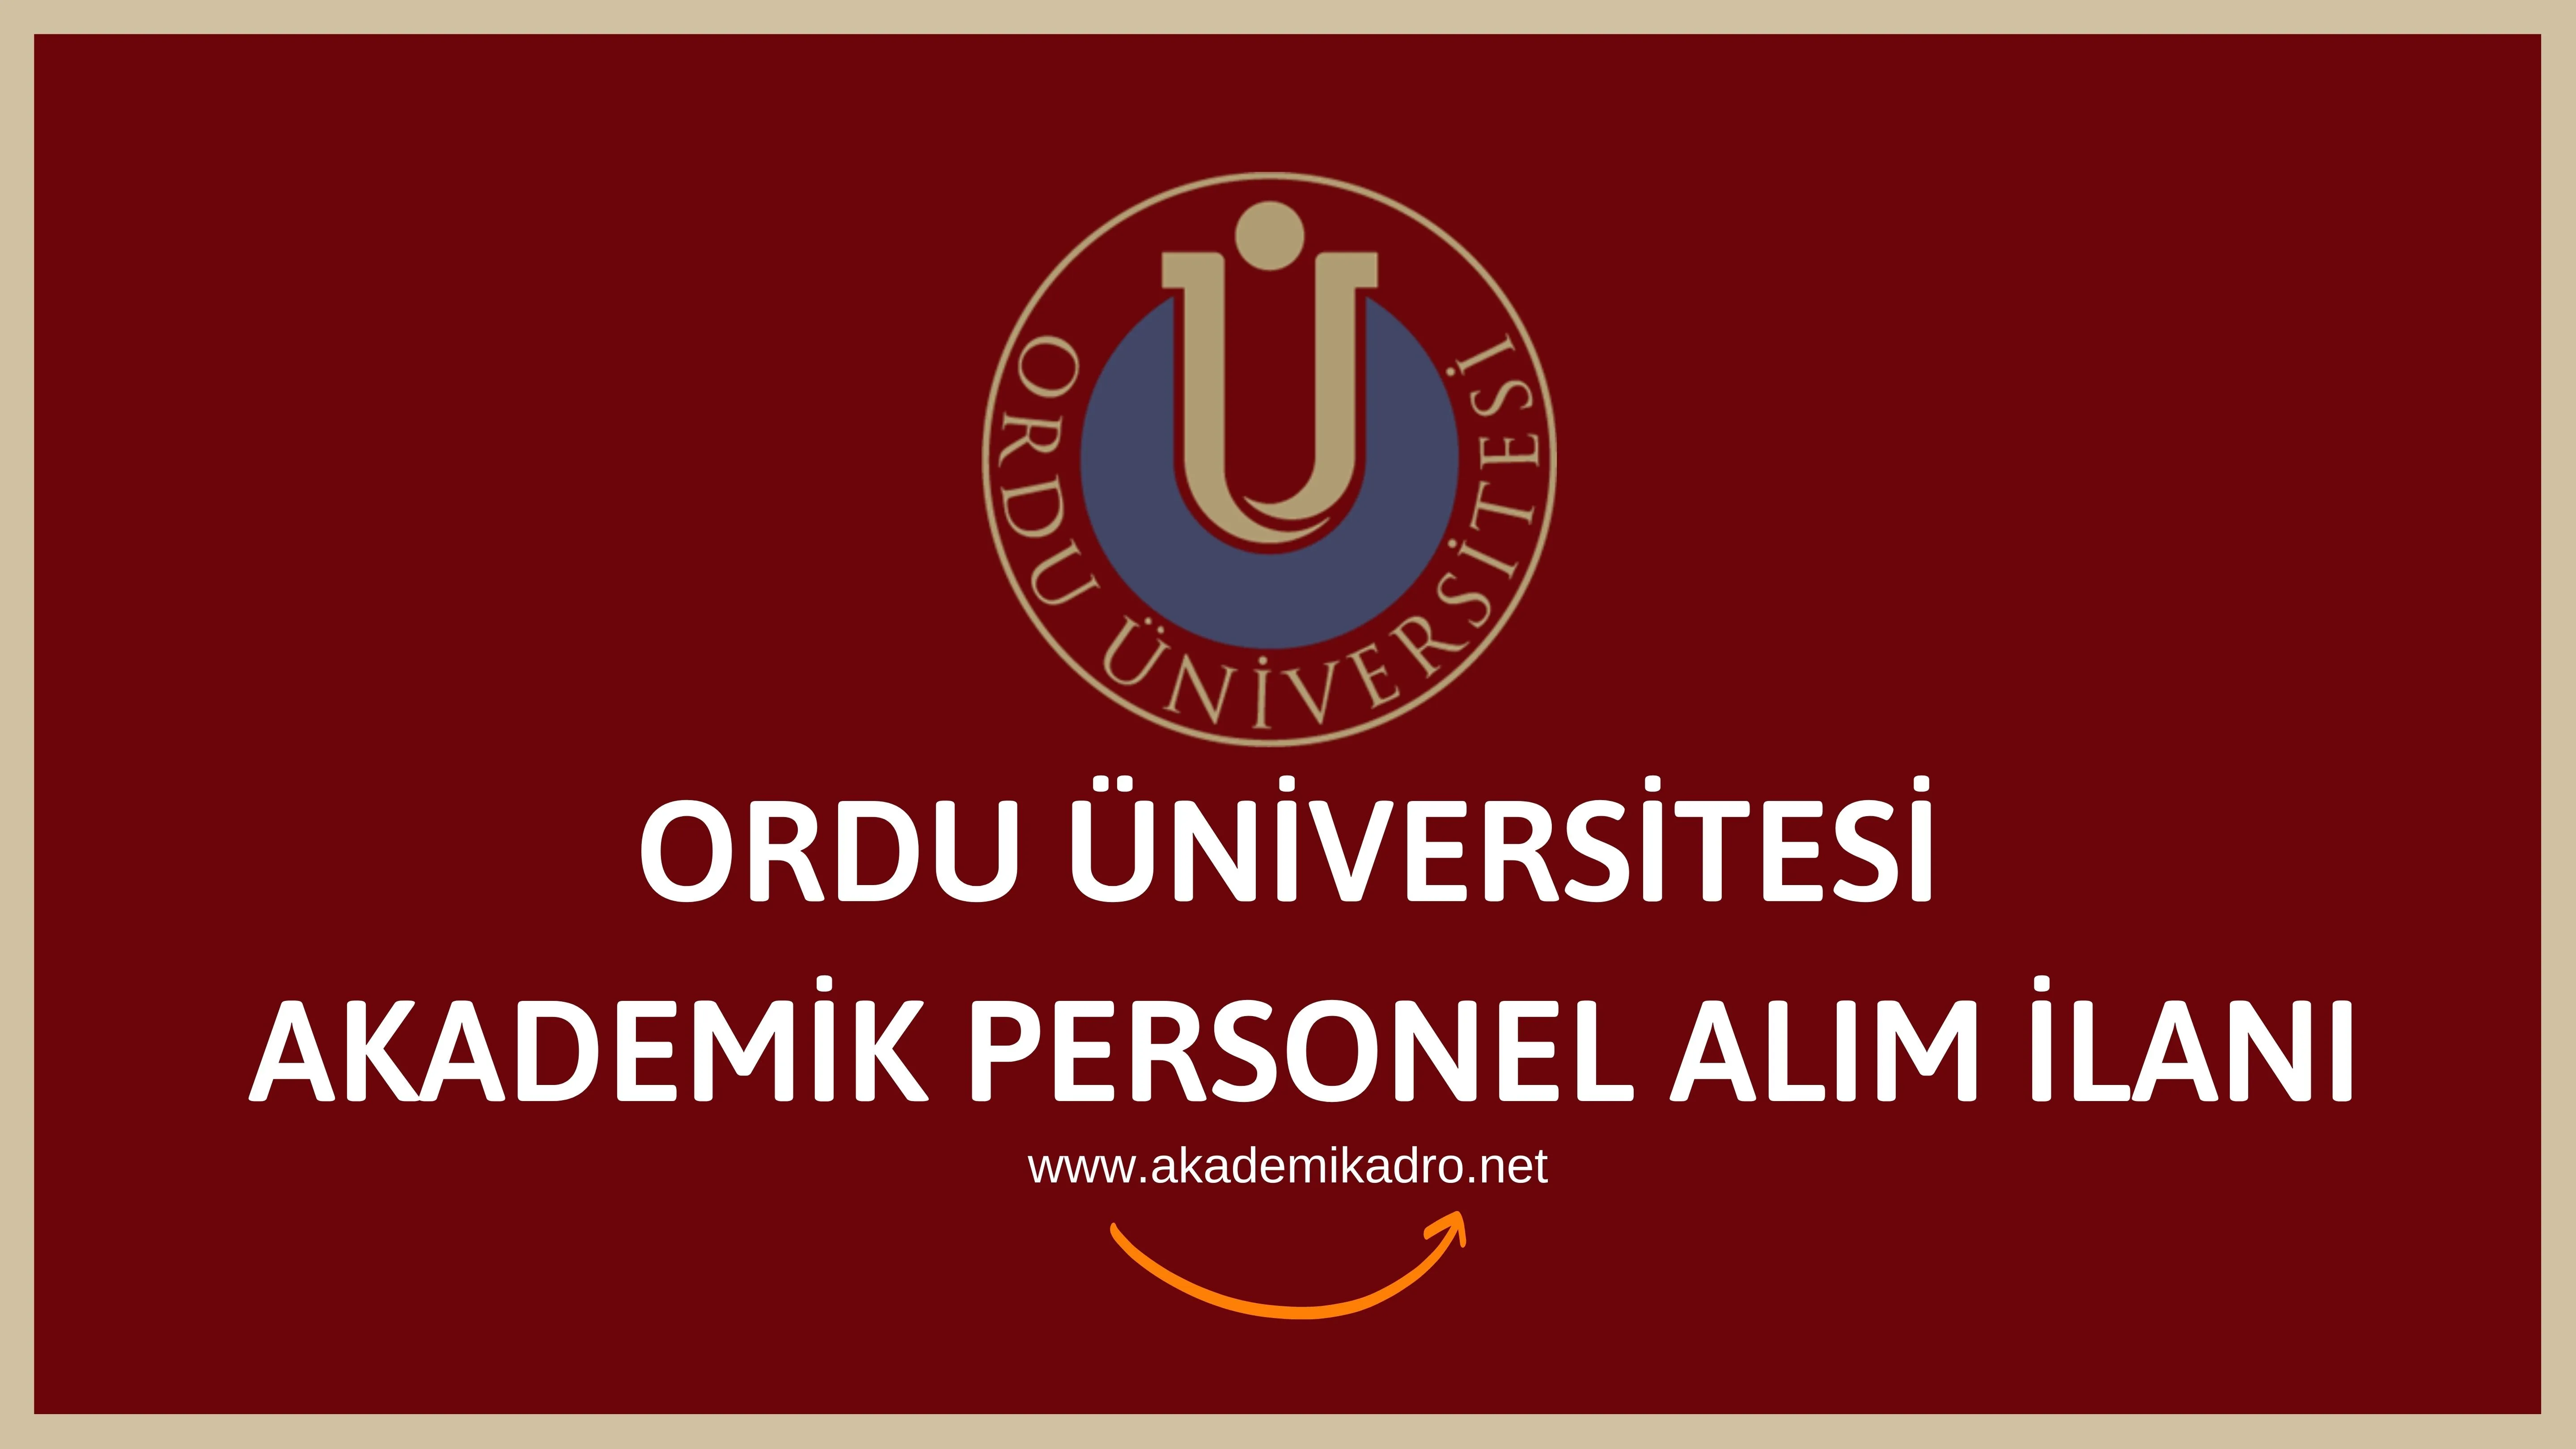 Ordu Üniversitesi birçok alandan 34 akademik personel alacak.